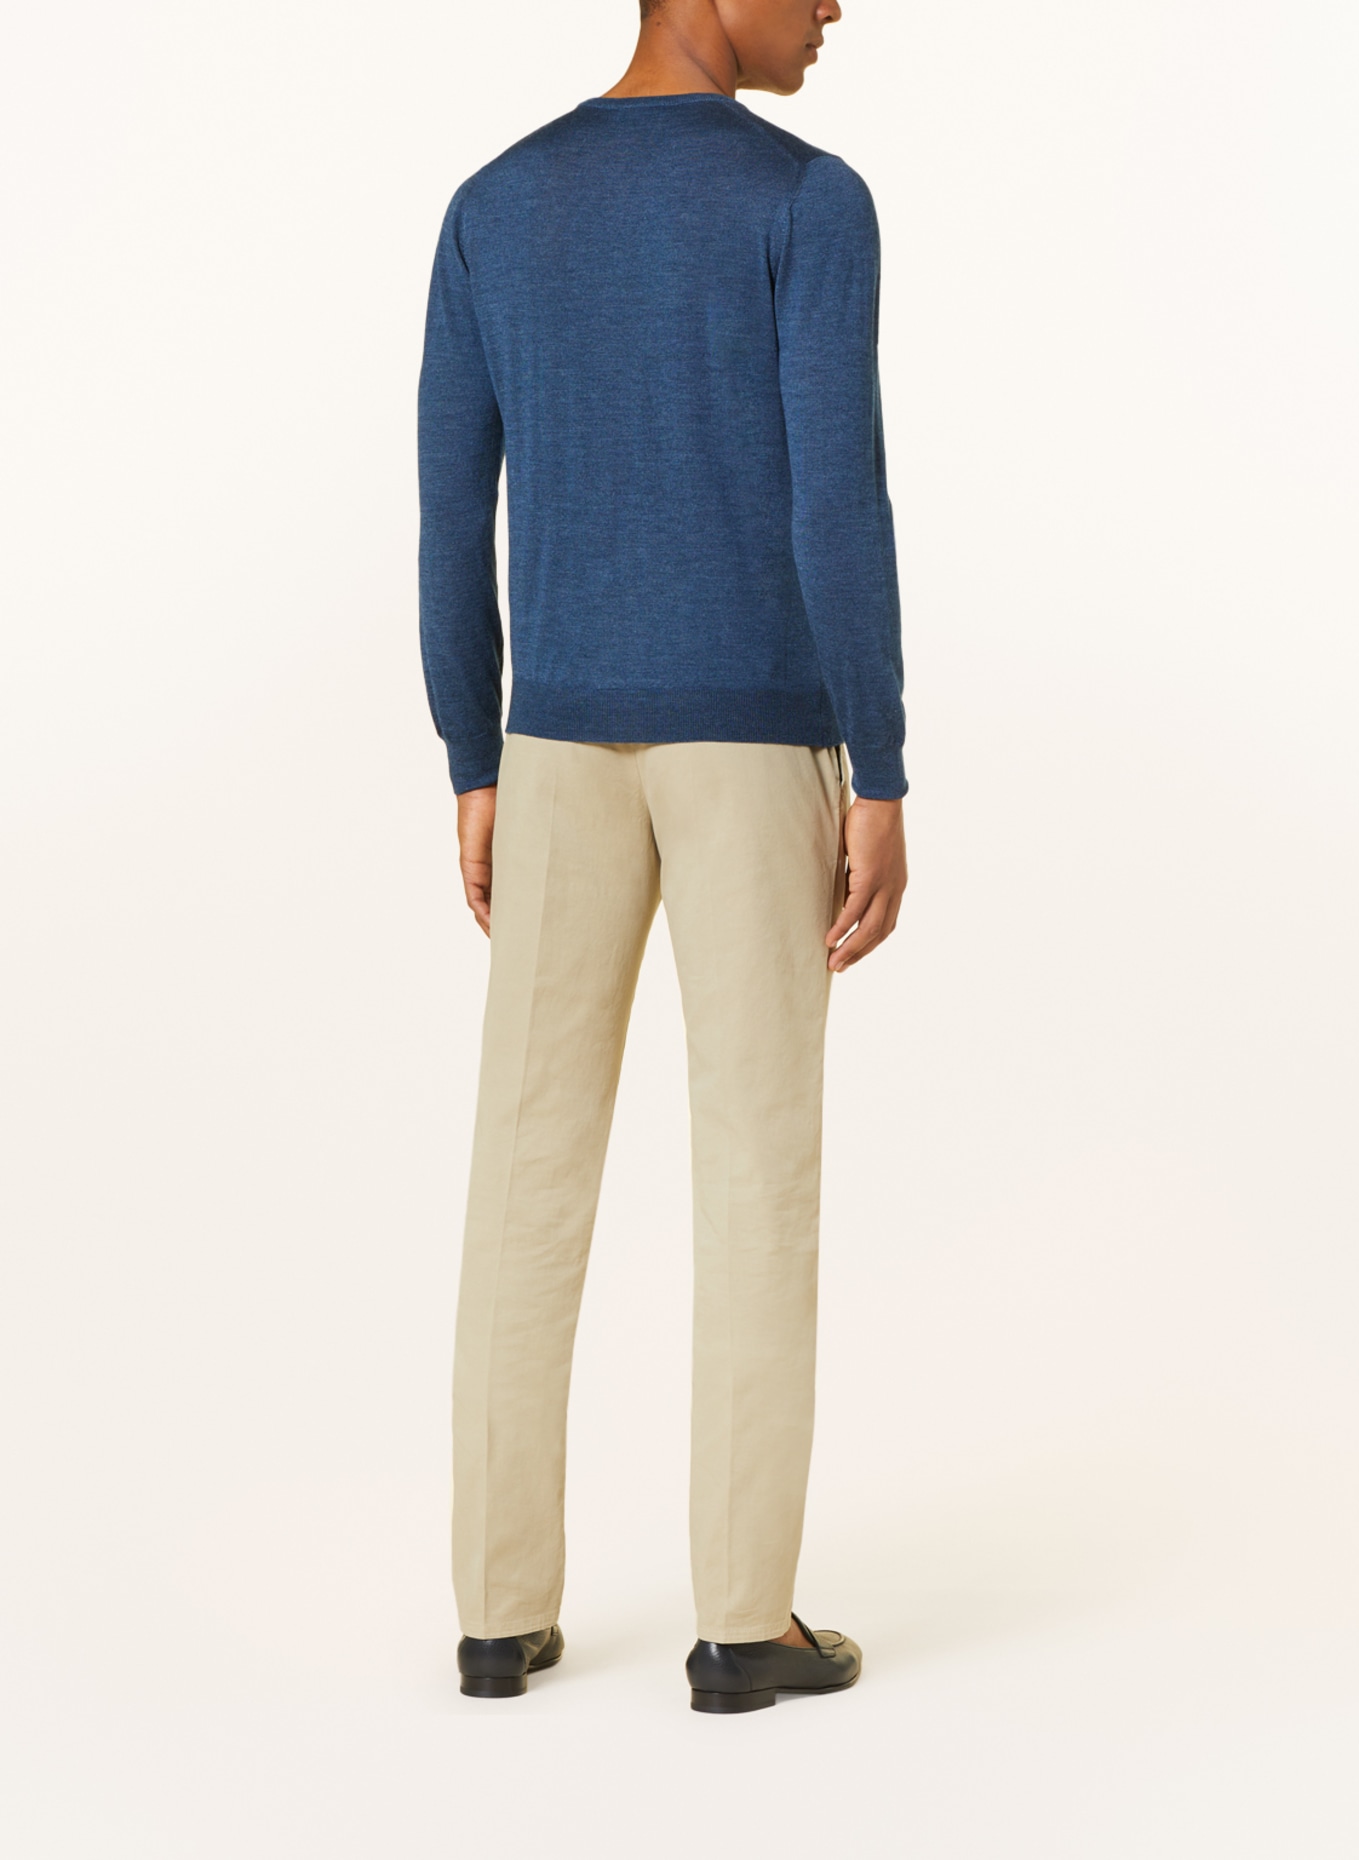 GRAN SASSO Pullover mit Seide, Farbe: BLAU (Bild 3)